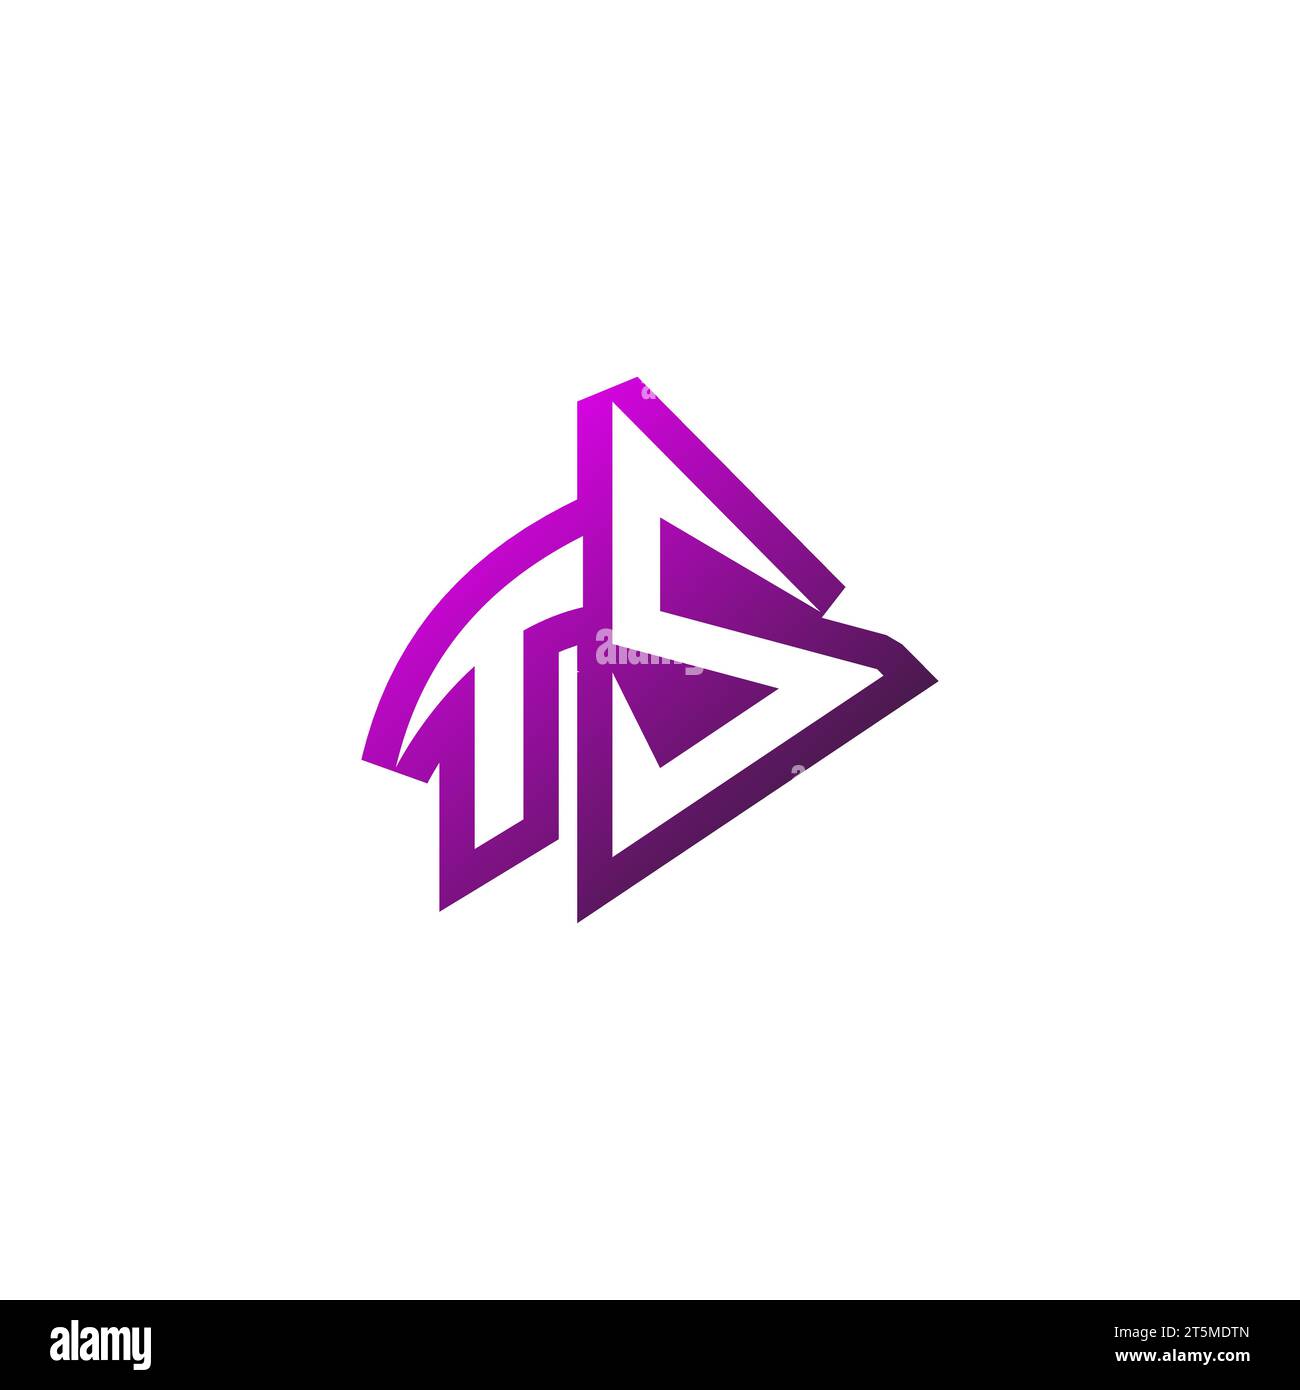 TS Premium emblem logo initial esport and gaming design concept Stock Vector